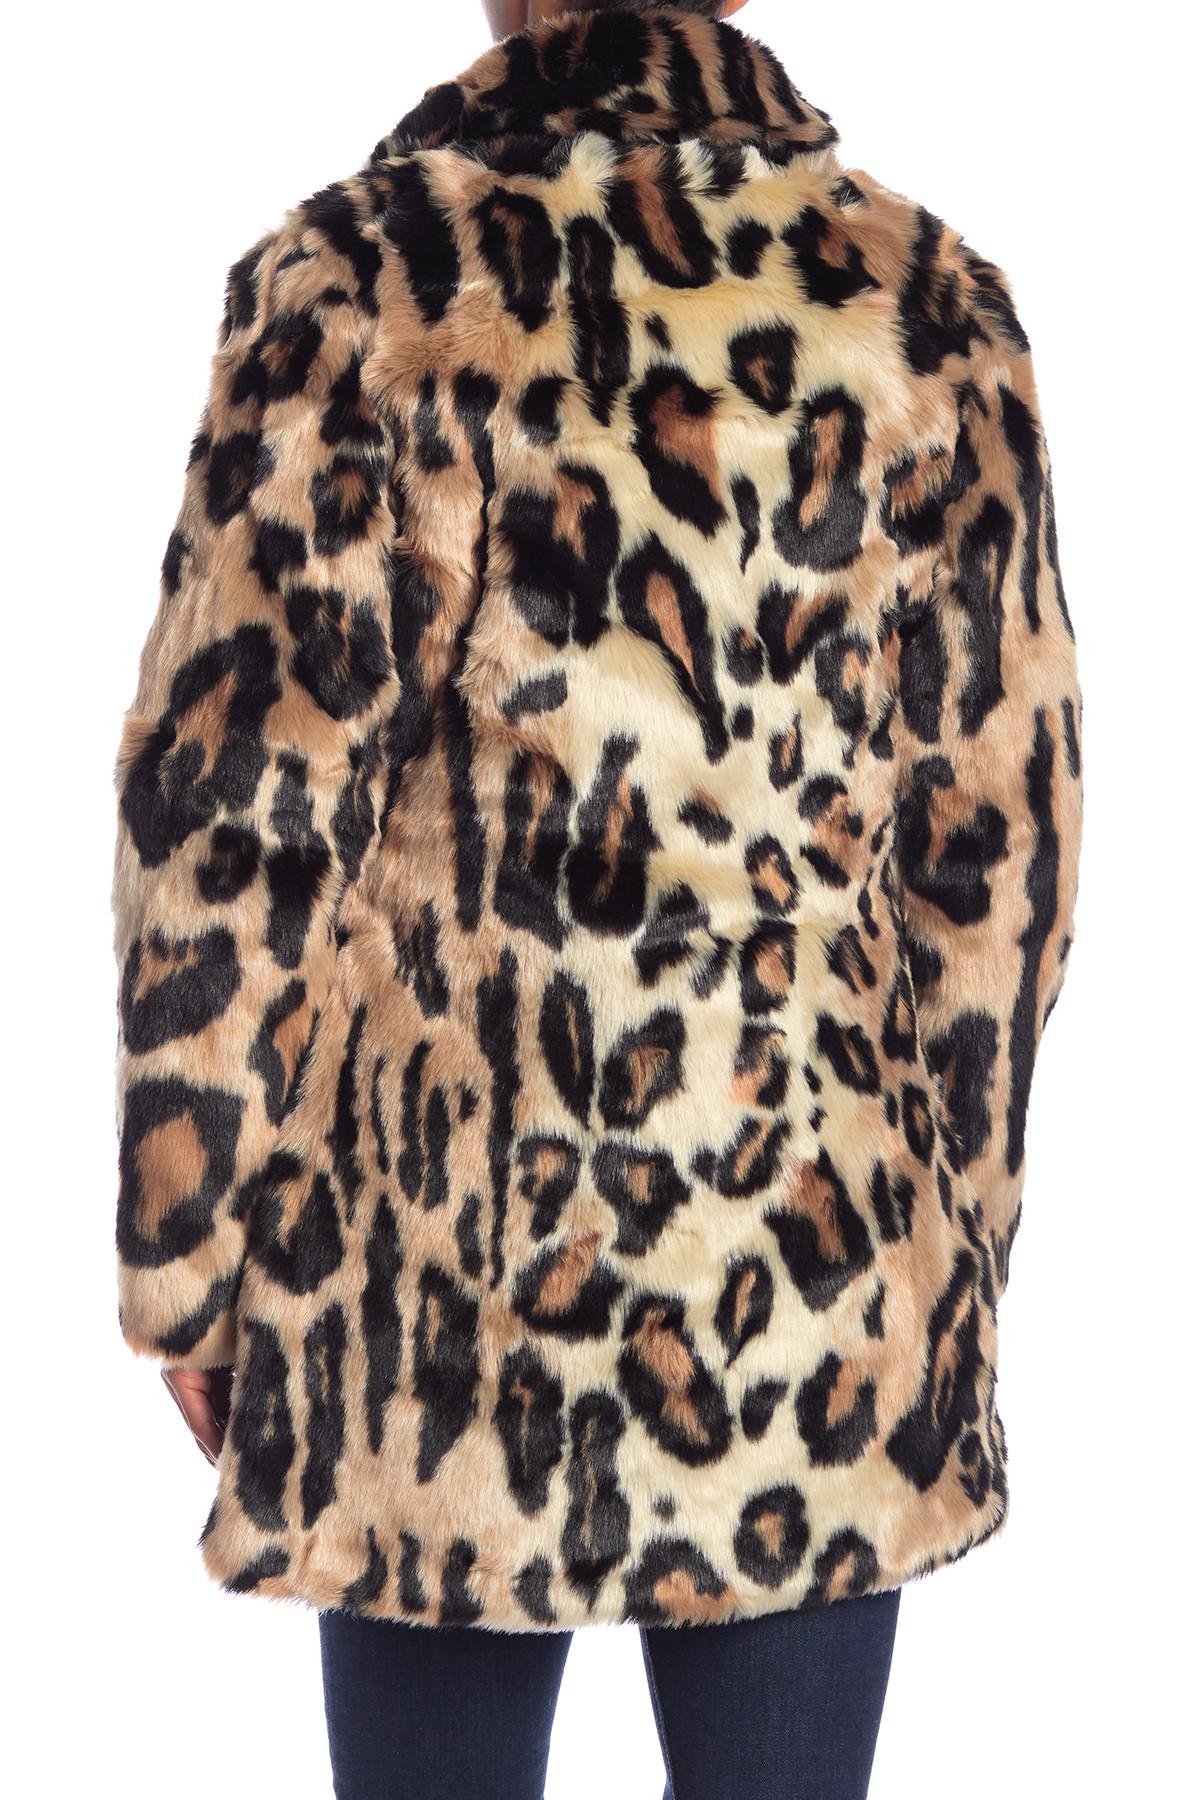 Animal Print Women's Faux Fur Coat Leopard FE8